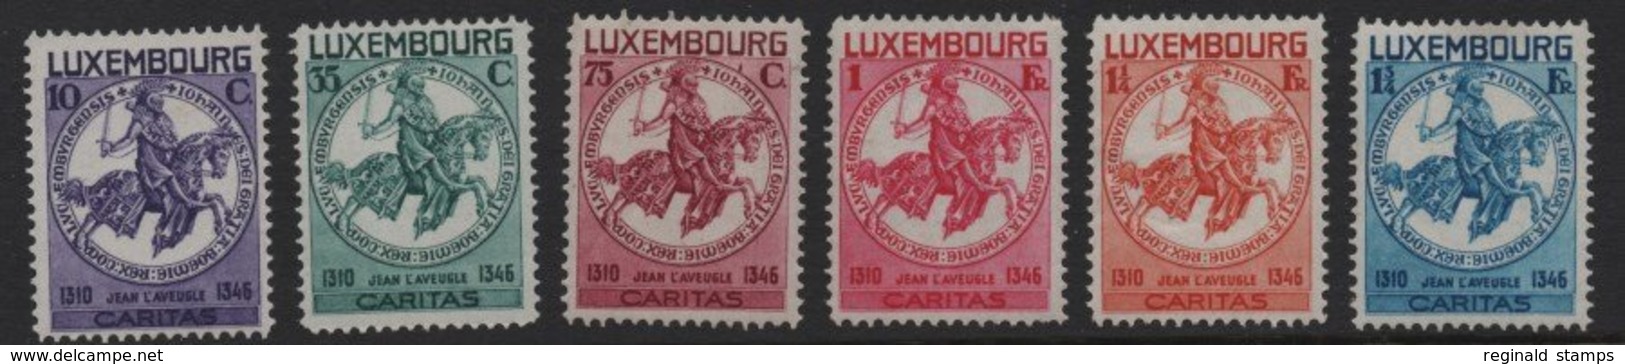 Luxembourg 1934 Caritas, MH* Mi 259/64 (Ref: 1567) - Unused Stamps